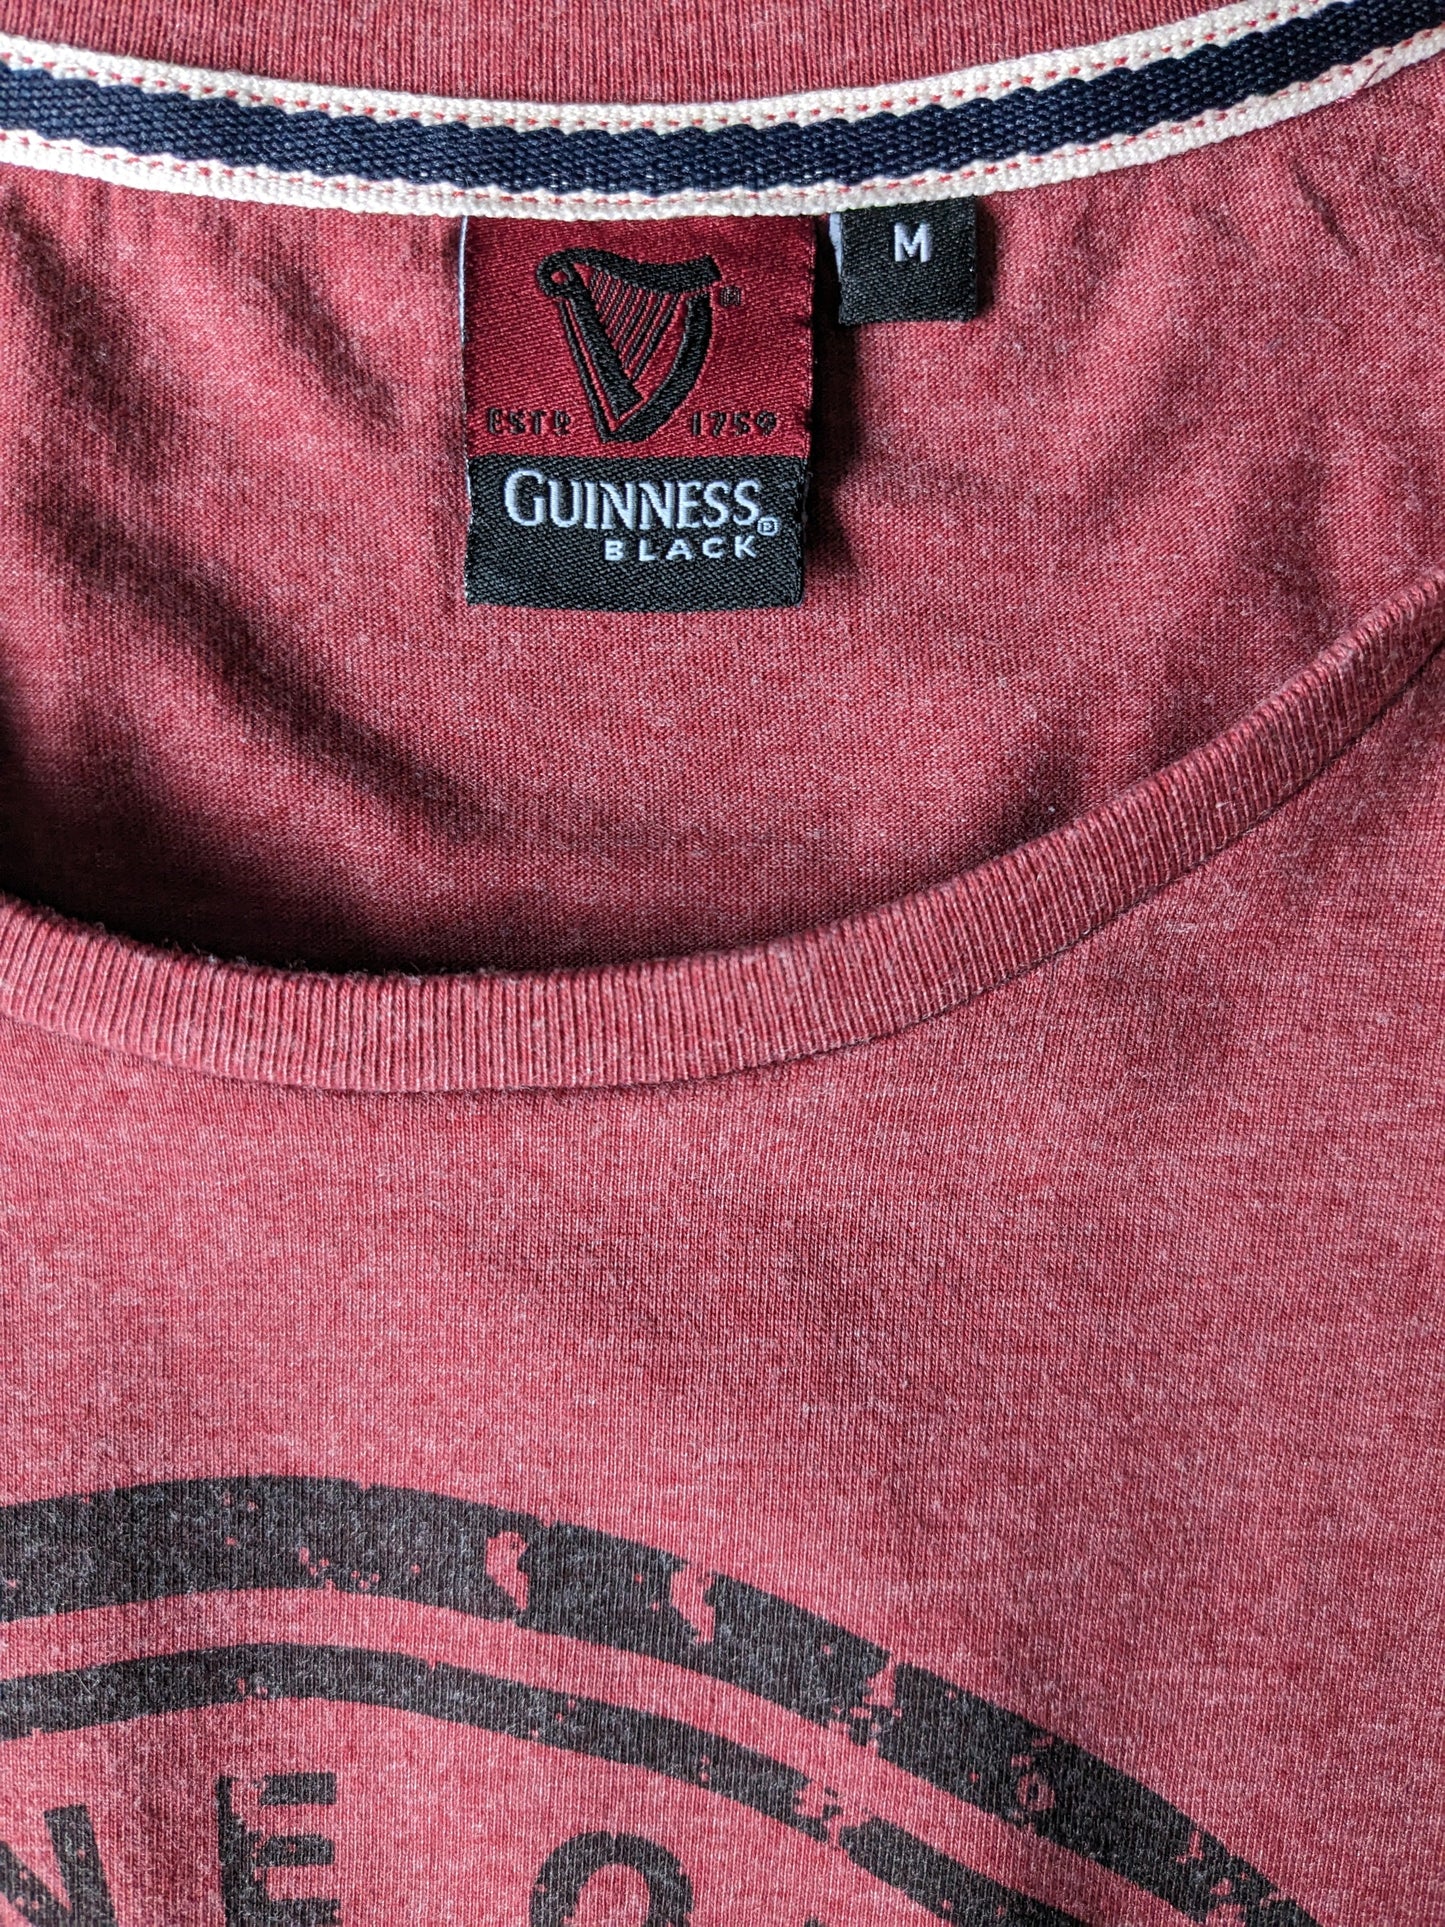 Guinness -Hemd. Rot gemischt mit Druck. Größe M.